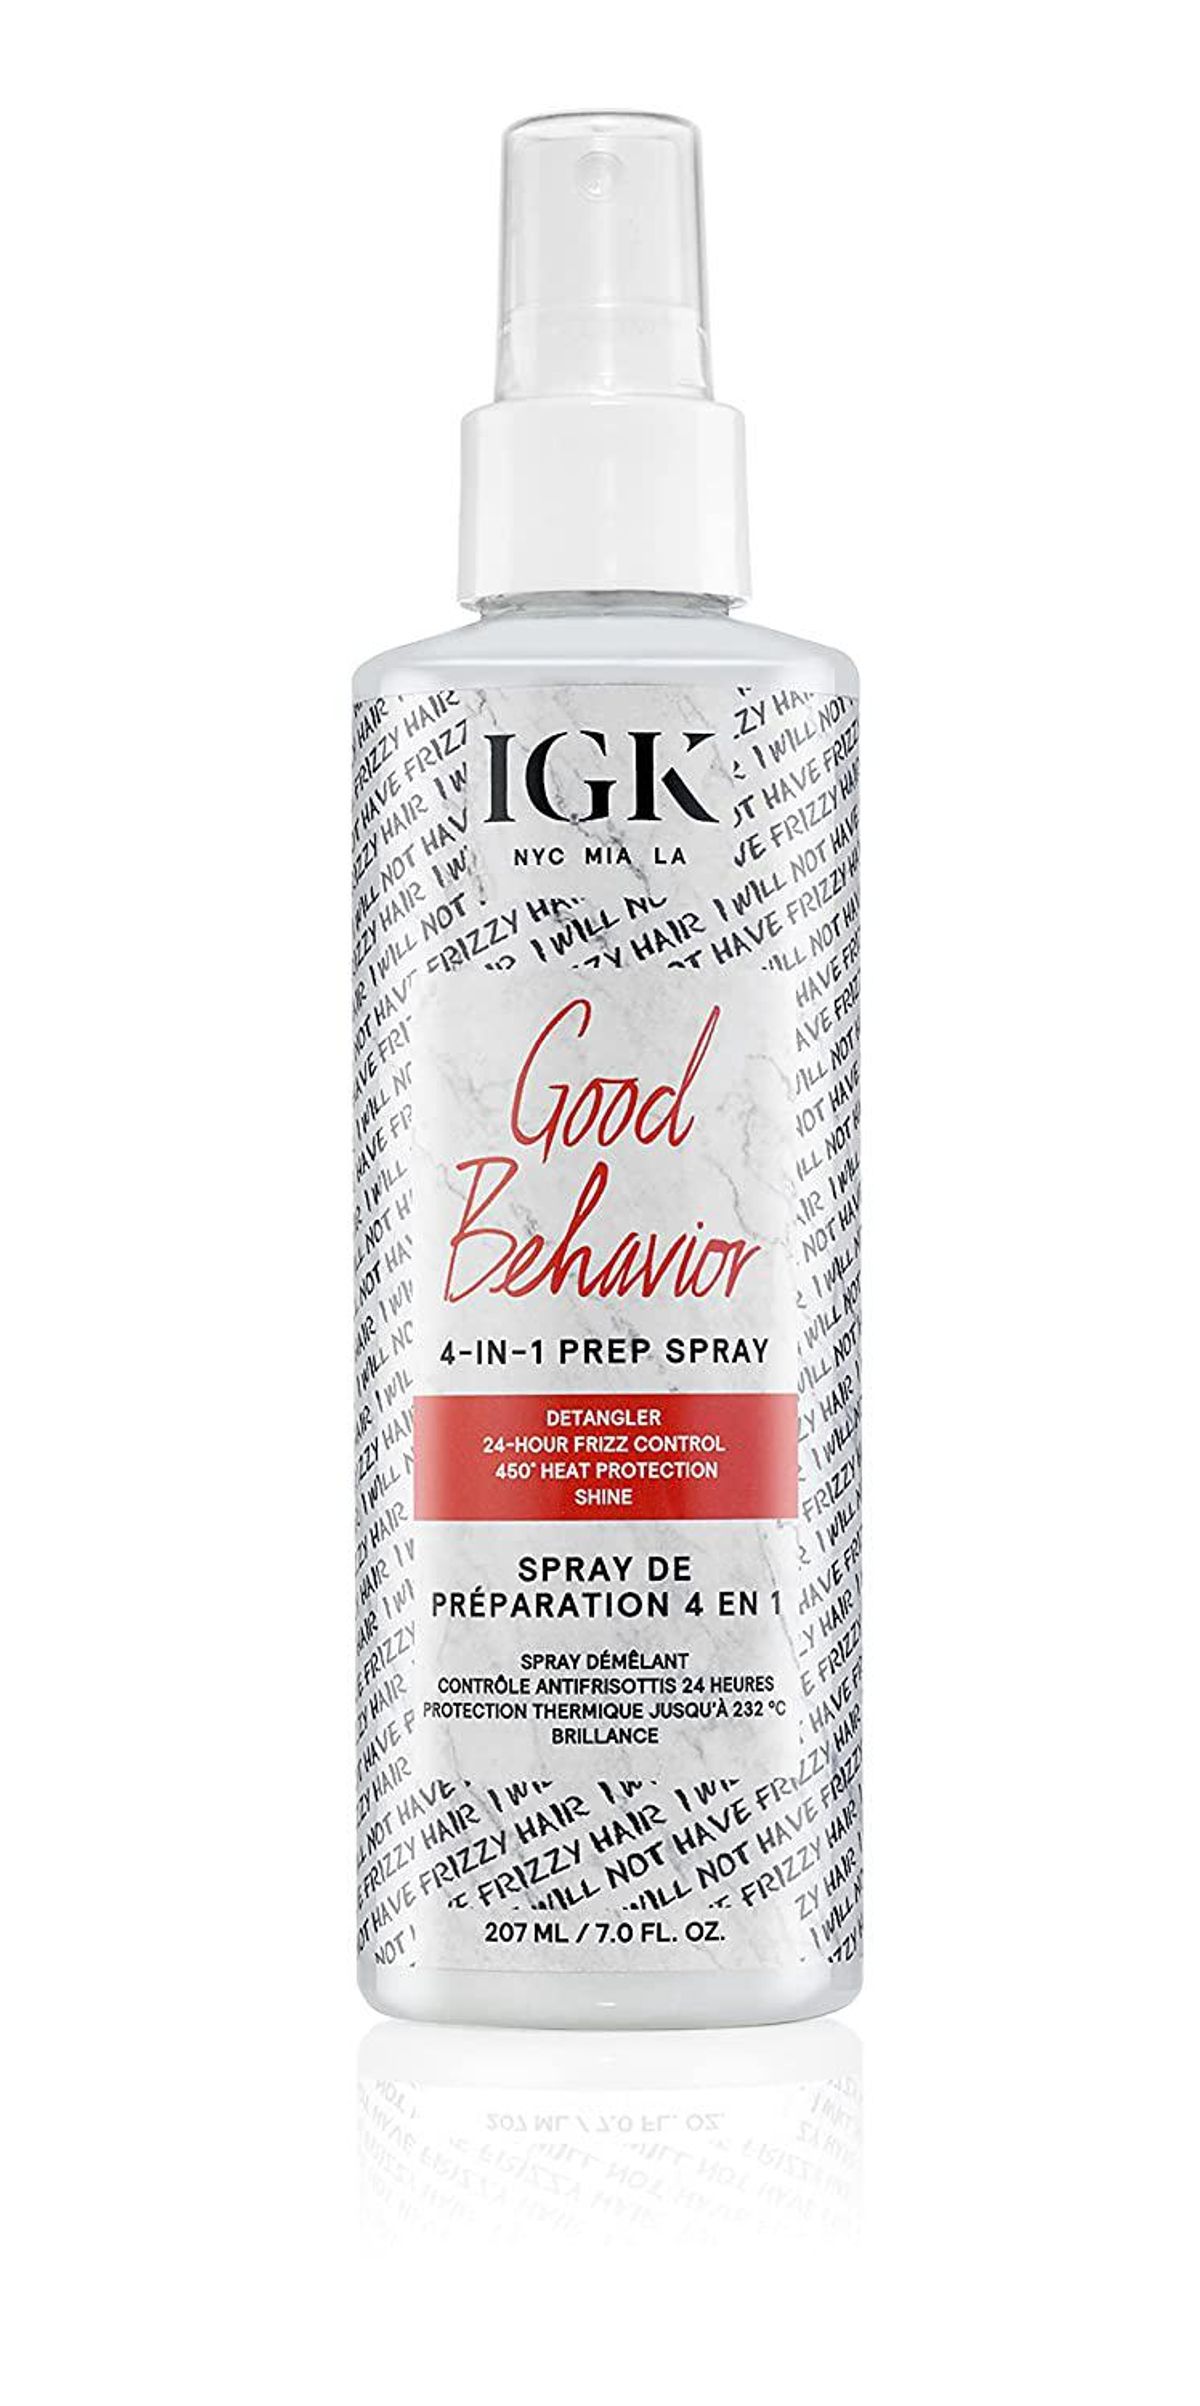 igk good behavior four in one prep spray